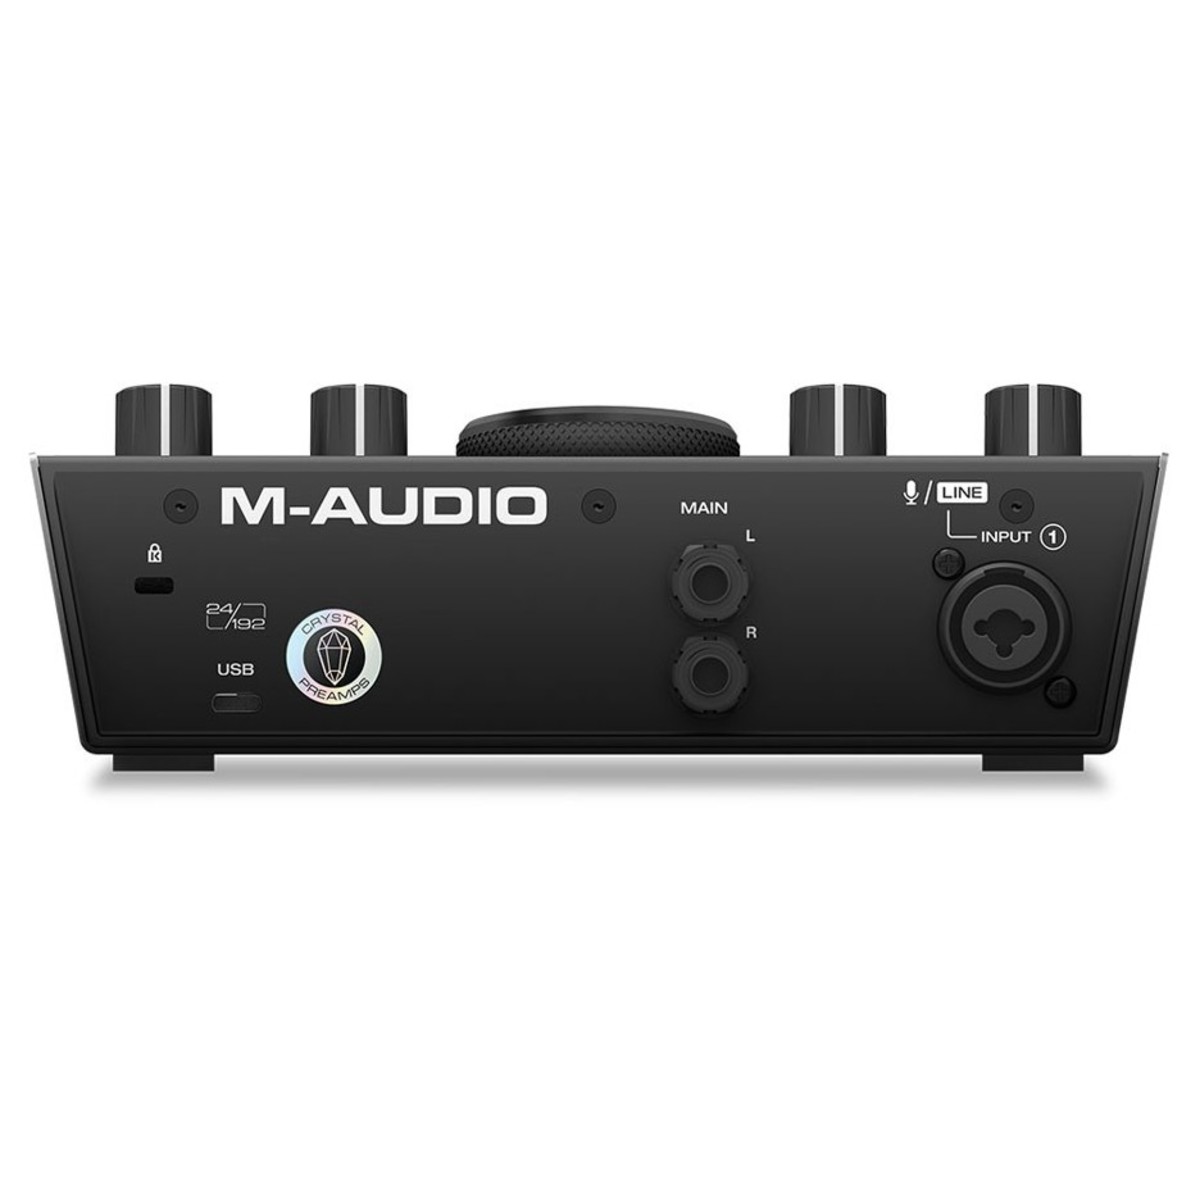 M-AUDIO AIR 192 4 INTERFACCIA AUDIO MIDI USB 2 IN 2 OUT CON 1 INGRESSI PER MICROFONICO 1